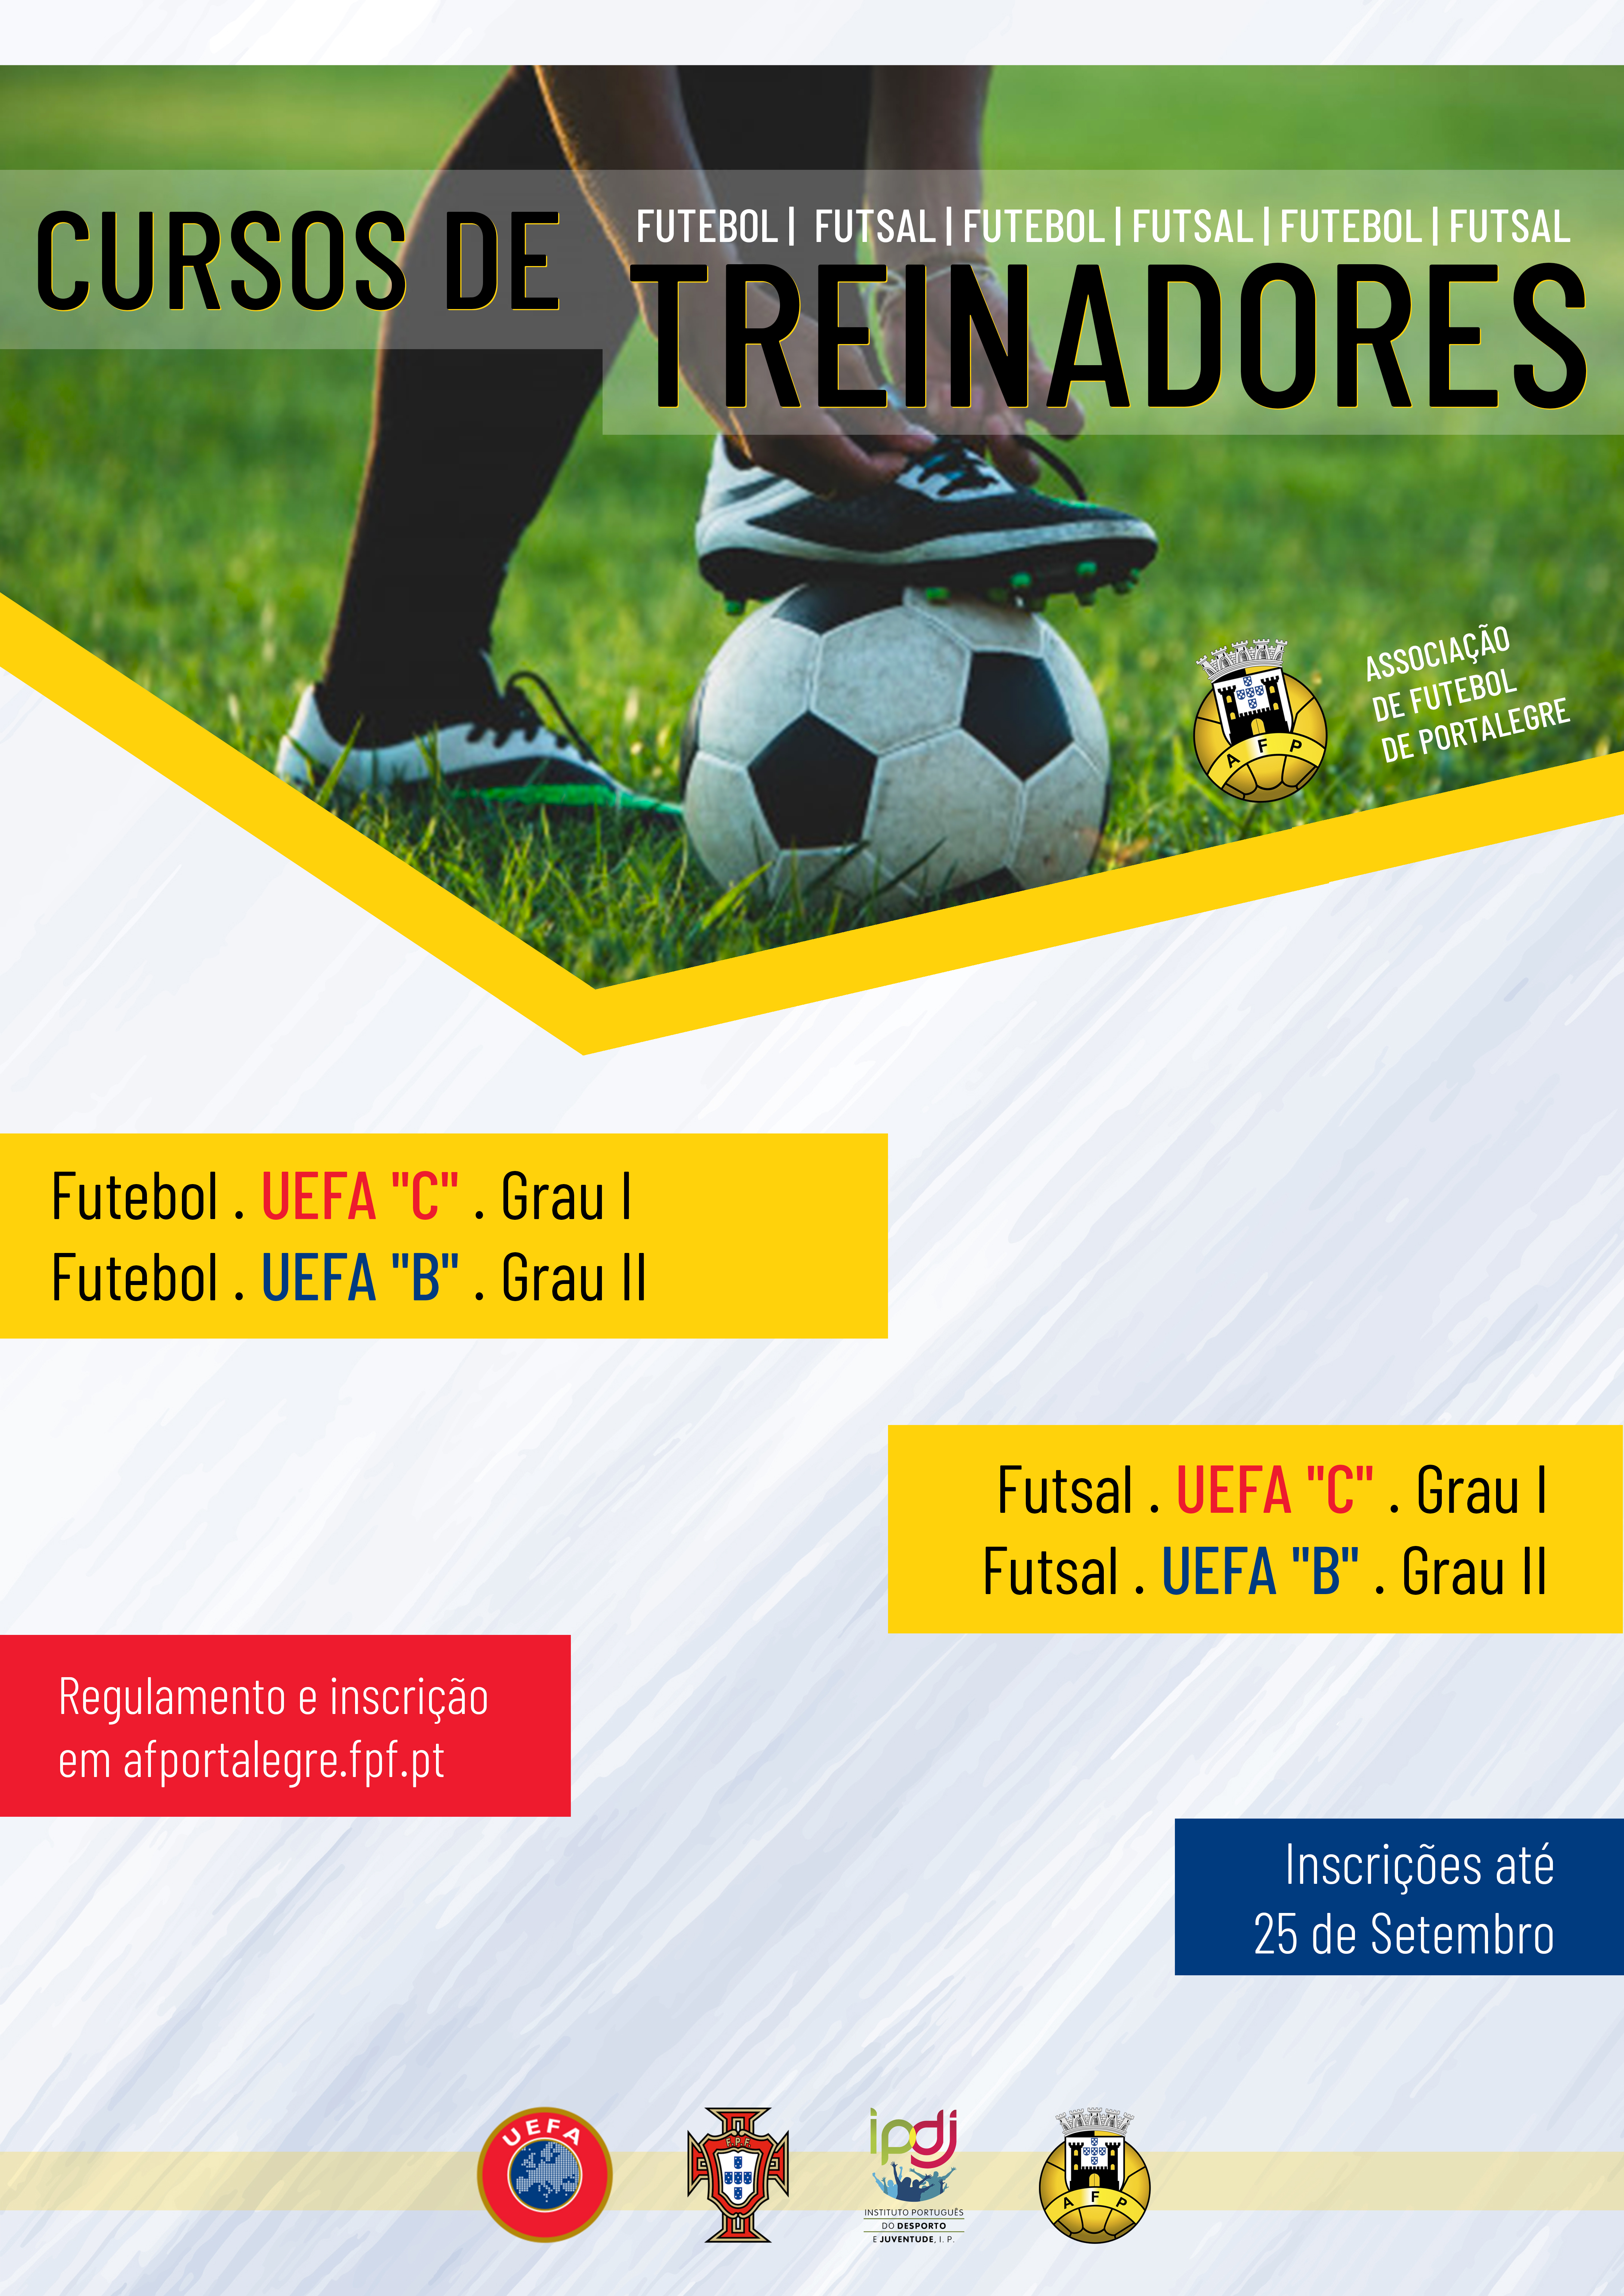 Cursos de Treinadores de Futebol e Futsal - UEFA "C" / Grau I e UEFA "B" / Grau II